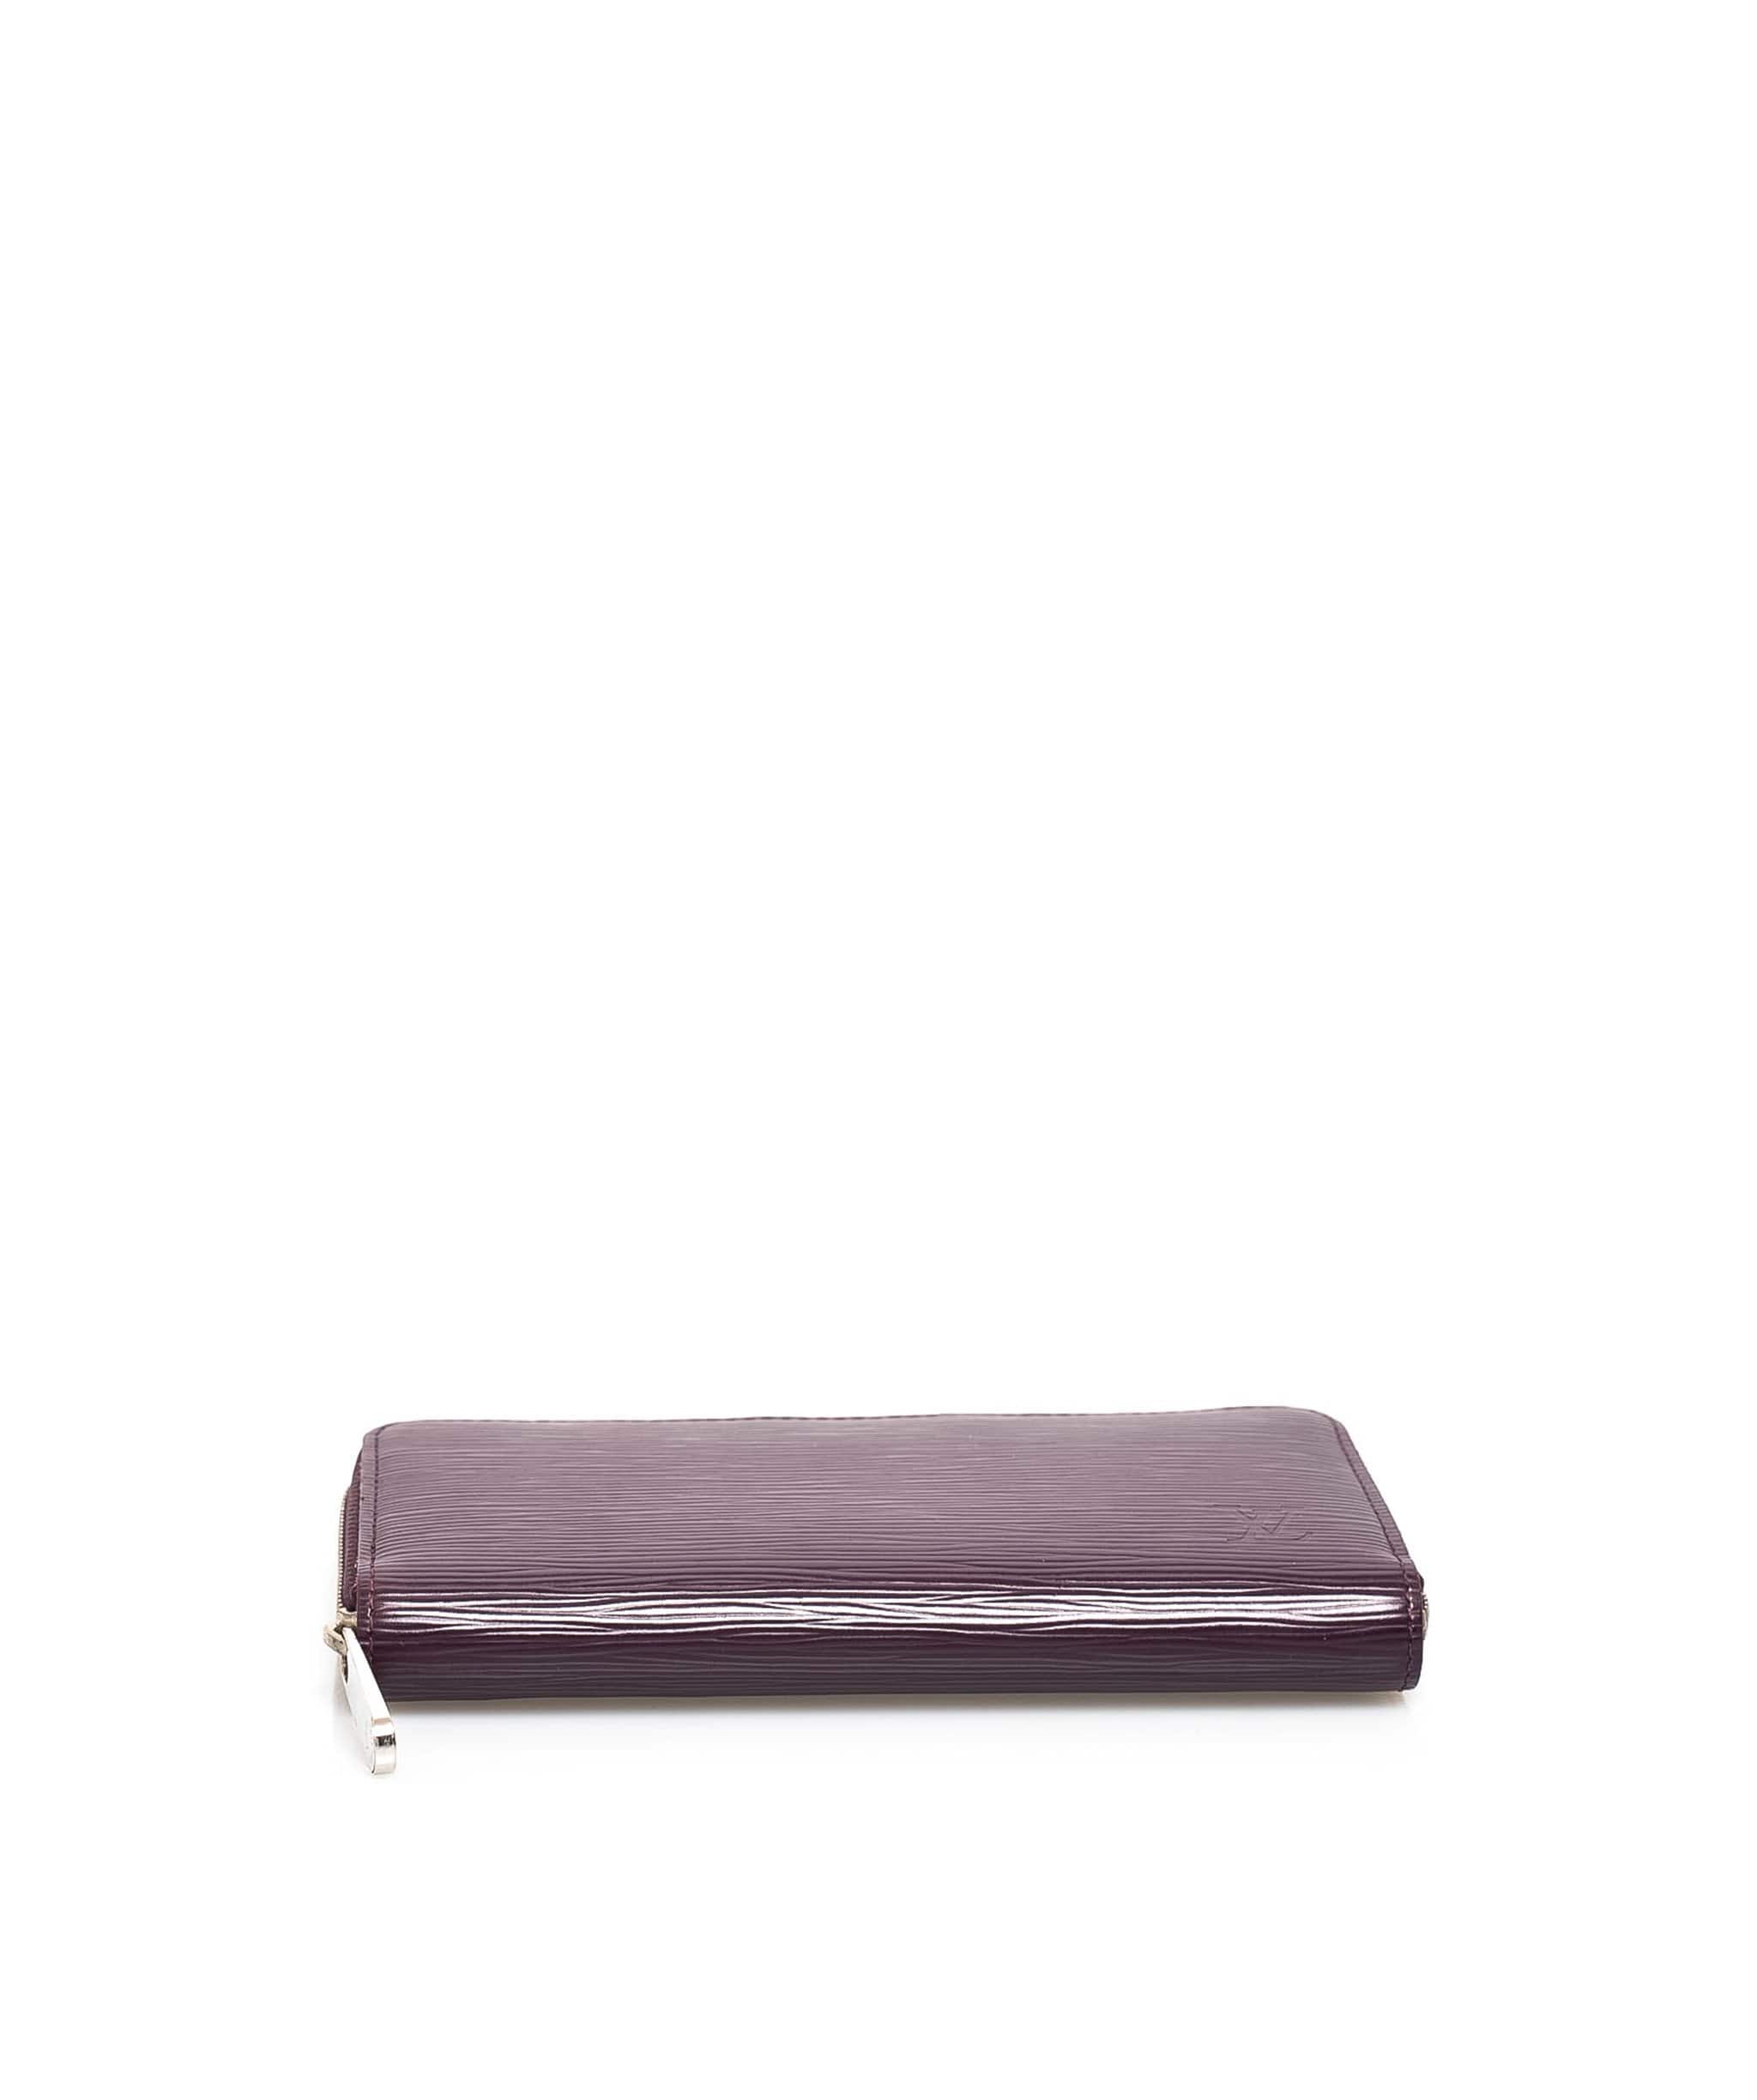 Louis Vuitton Louis Vuitton Purple Epi Leather Wallet - ADL1504